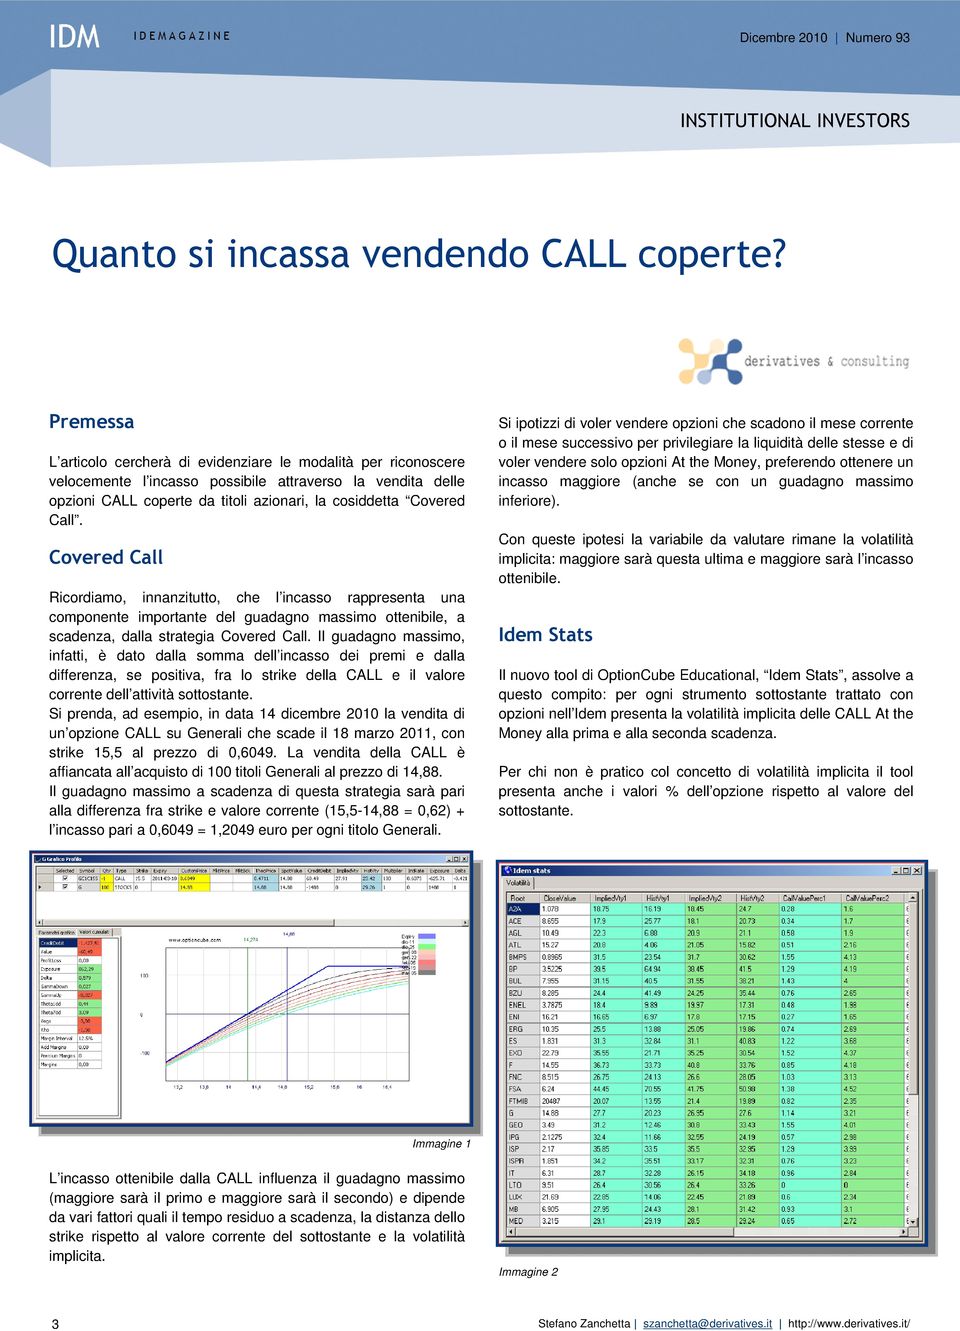 Covered Call Ricordiamo, innanzitutto, che l incasso rappresenta una componente importante del guadagno massimo ottenibile, a scadenza, dalla strategia Covered Call.